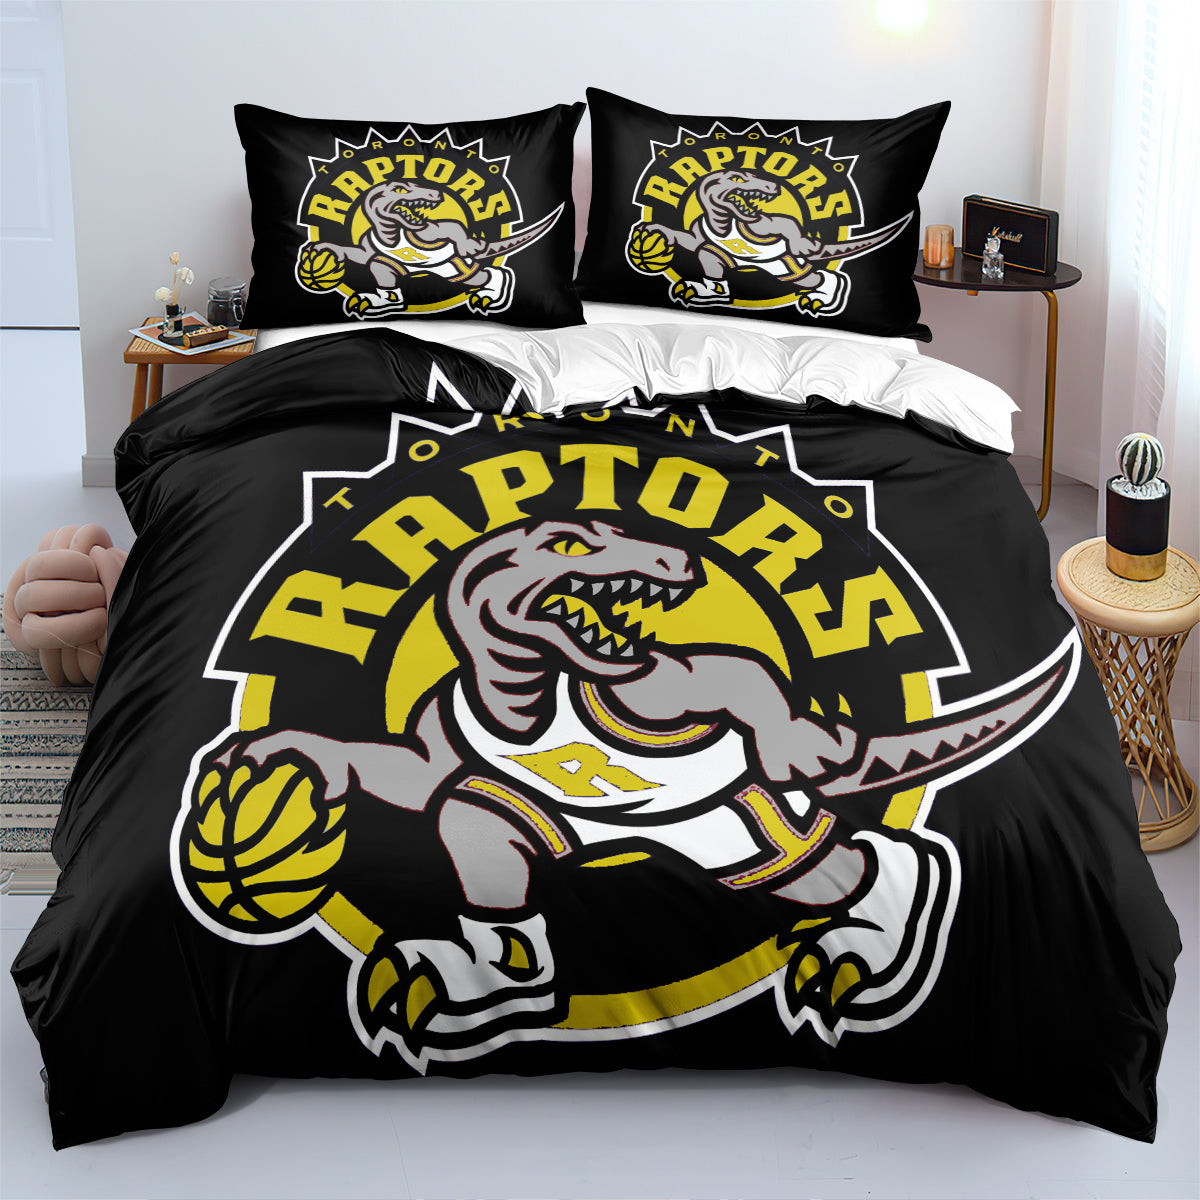 Toronto Basketball Raptors Bedding Set Quilt Cover Without Filler